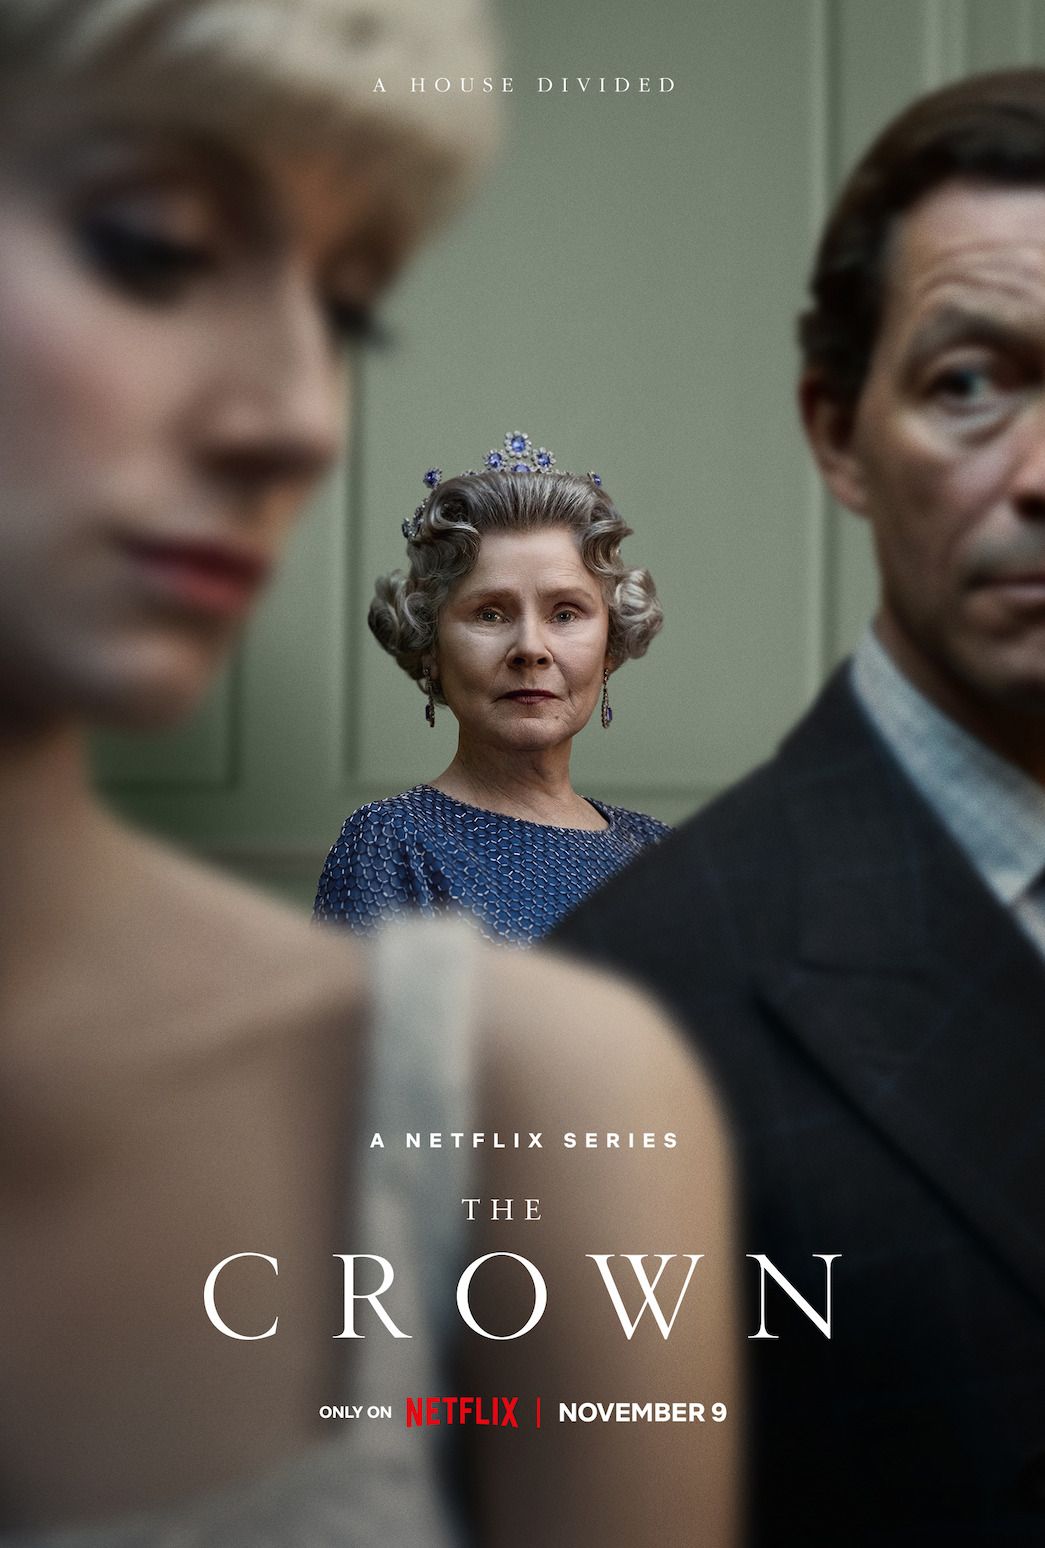 L’affiche de la saison 6 de « The Crown » met l’accent sur Will et Kate